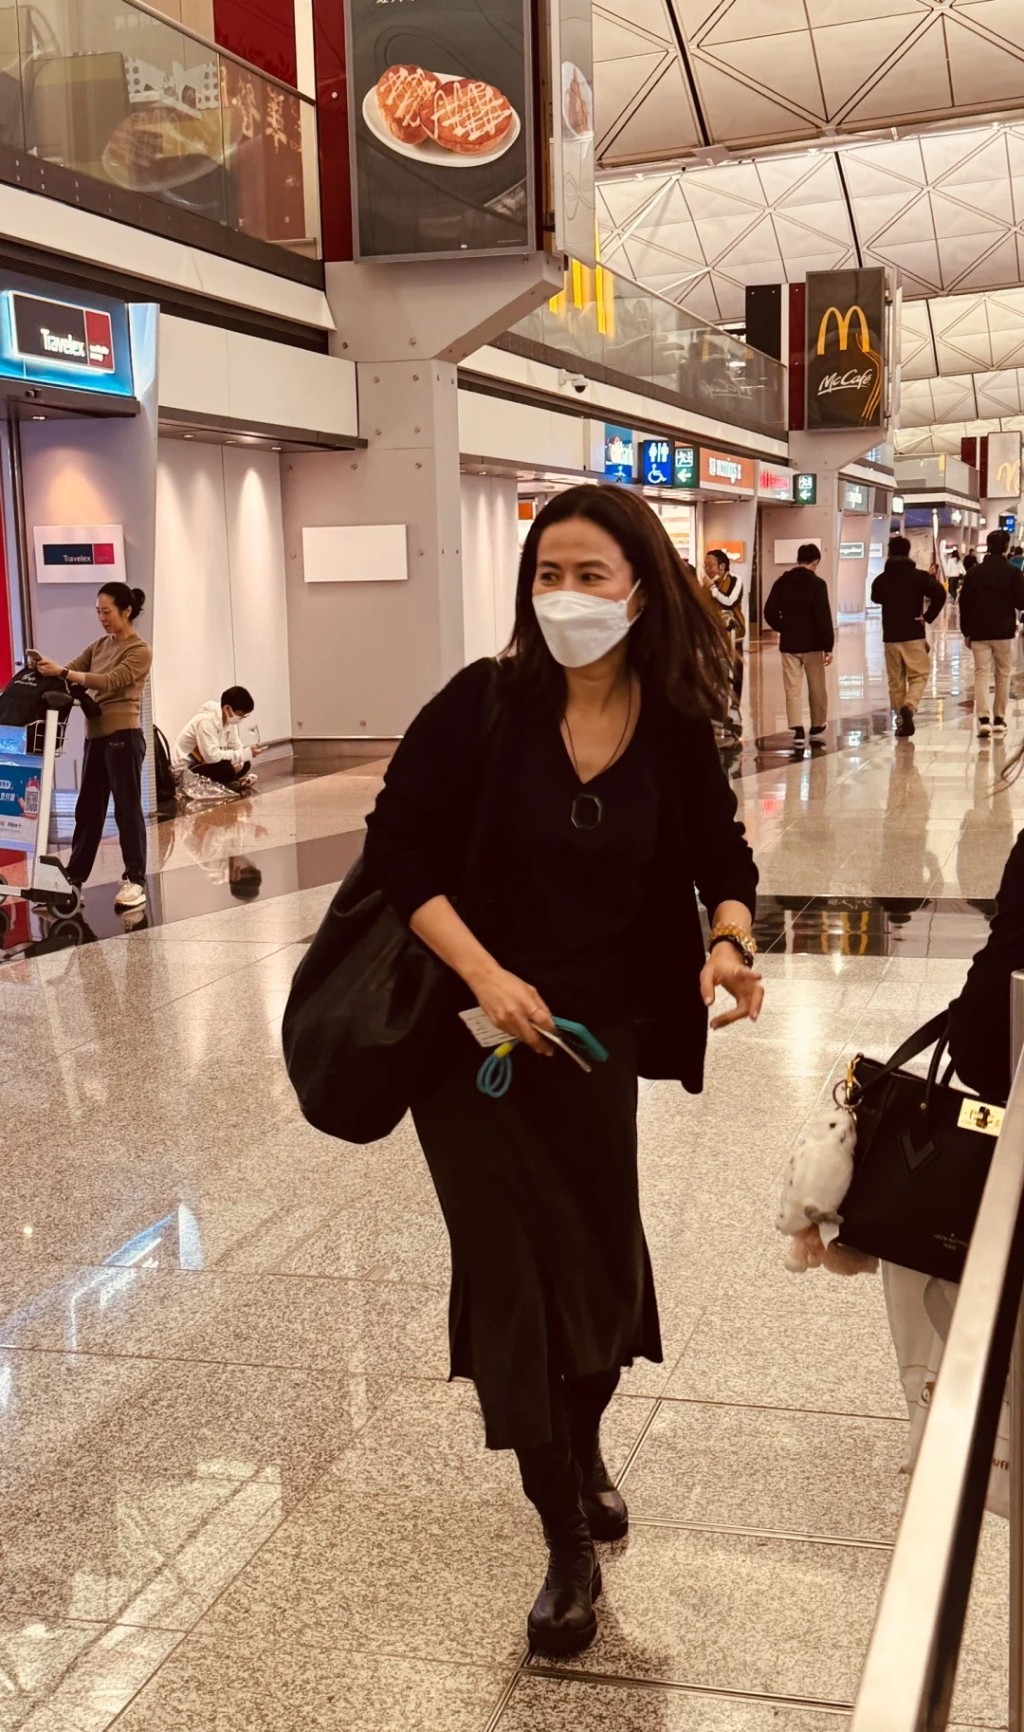 宣萱匆忙地抵達機場。